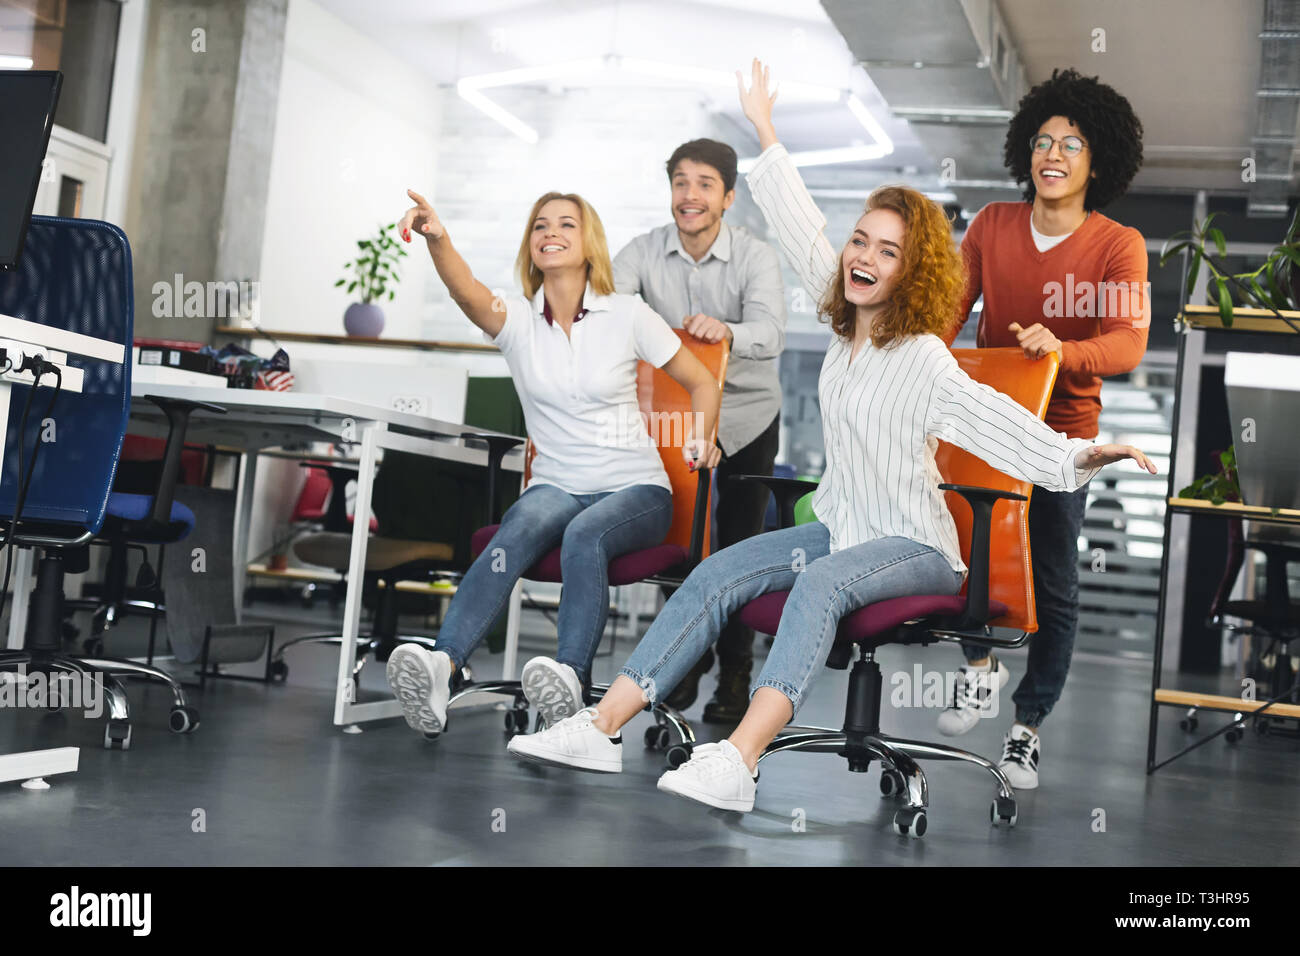 Los millennials alegre montando en muebles de oficina, divertirse en el trabajo Foto de stock